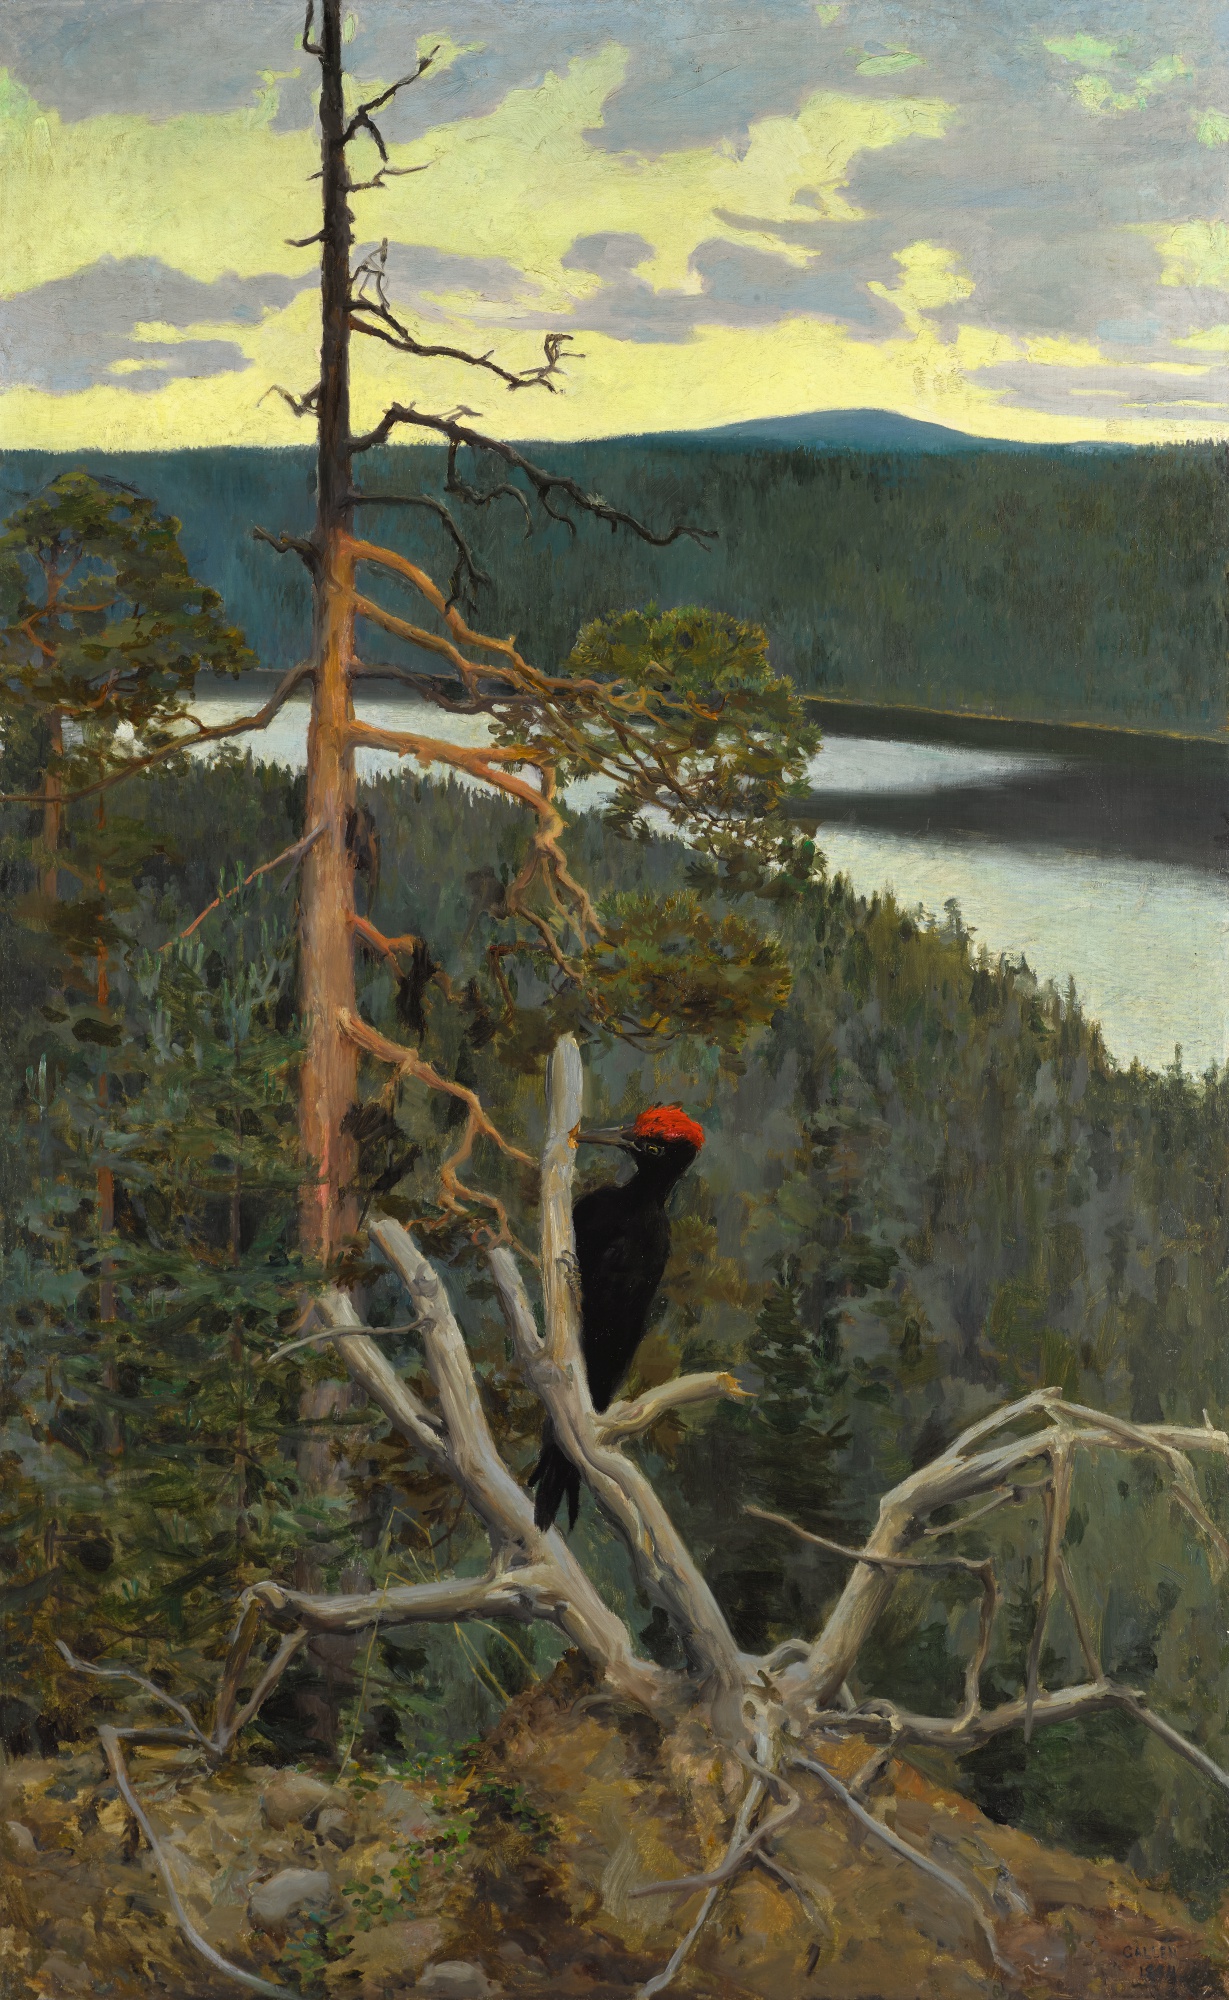 Palokärki (Pica-pau preto) by Akseli Gallen-Kallela - 1894 - 145 x 91 cm coleção privada